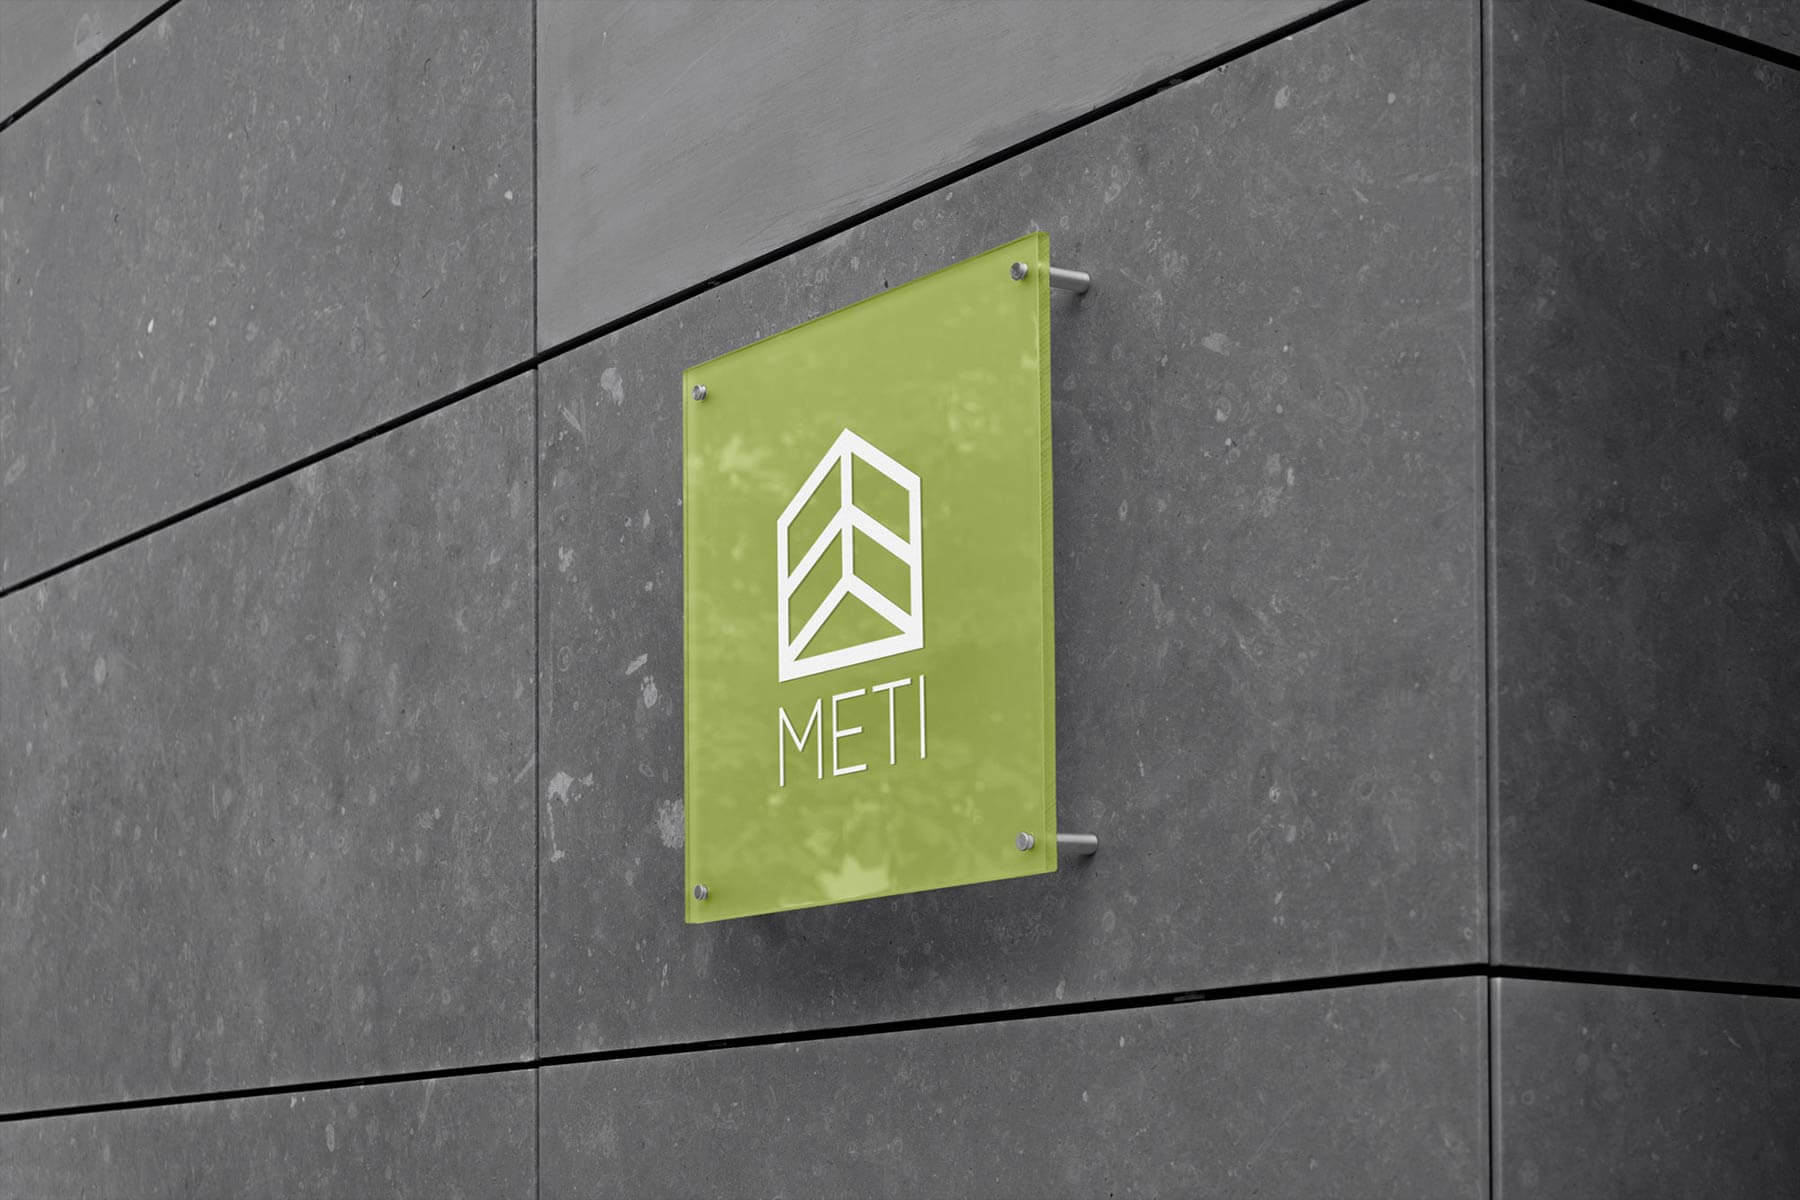 Logo e brand identity di Meti realizzato da SEBA! grafico di Gravellona Toce nel VCO della targa in plexiglass verde con stampa bianca